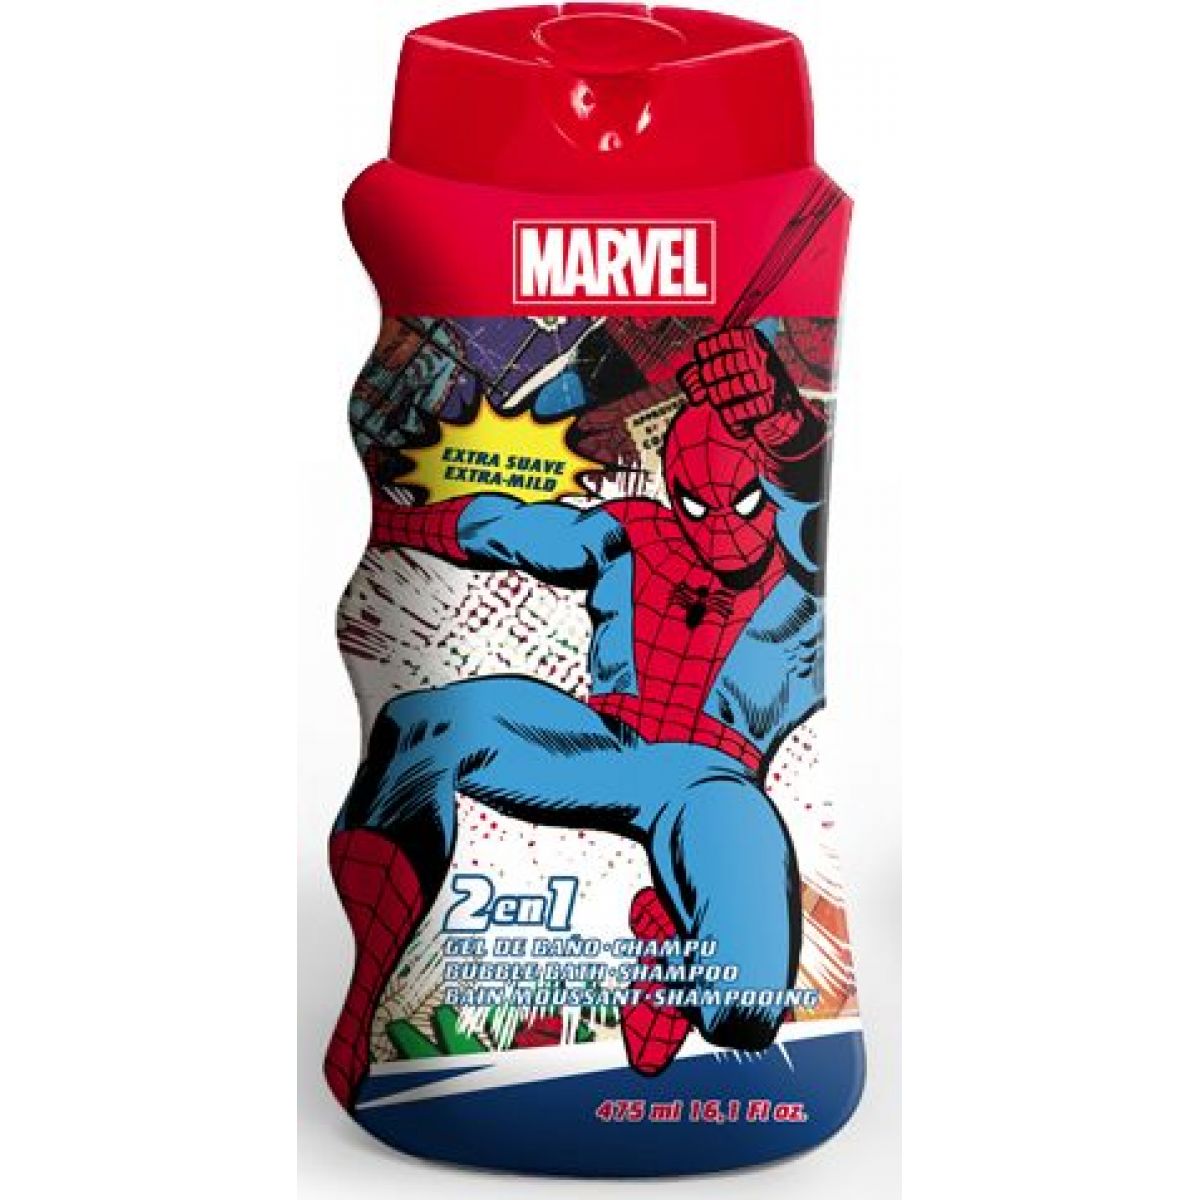 EP Line kosmetika Spiderman Koupelový a sprchový gel 475 ml